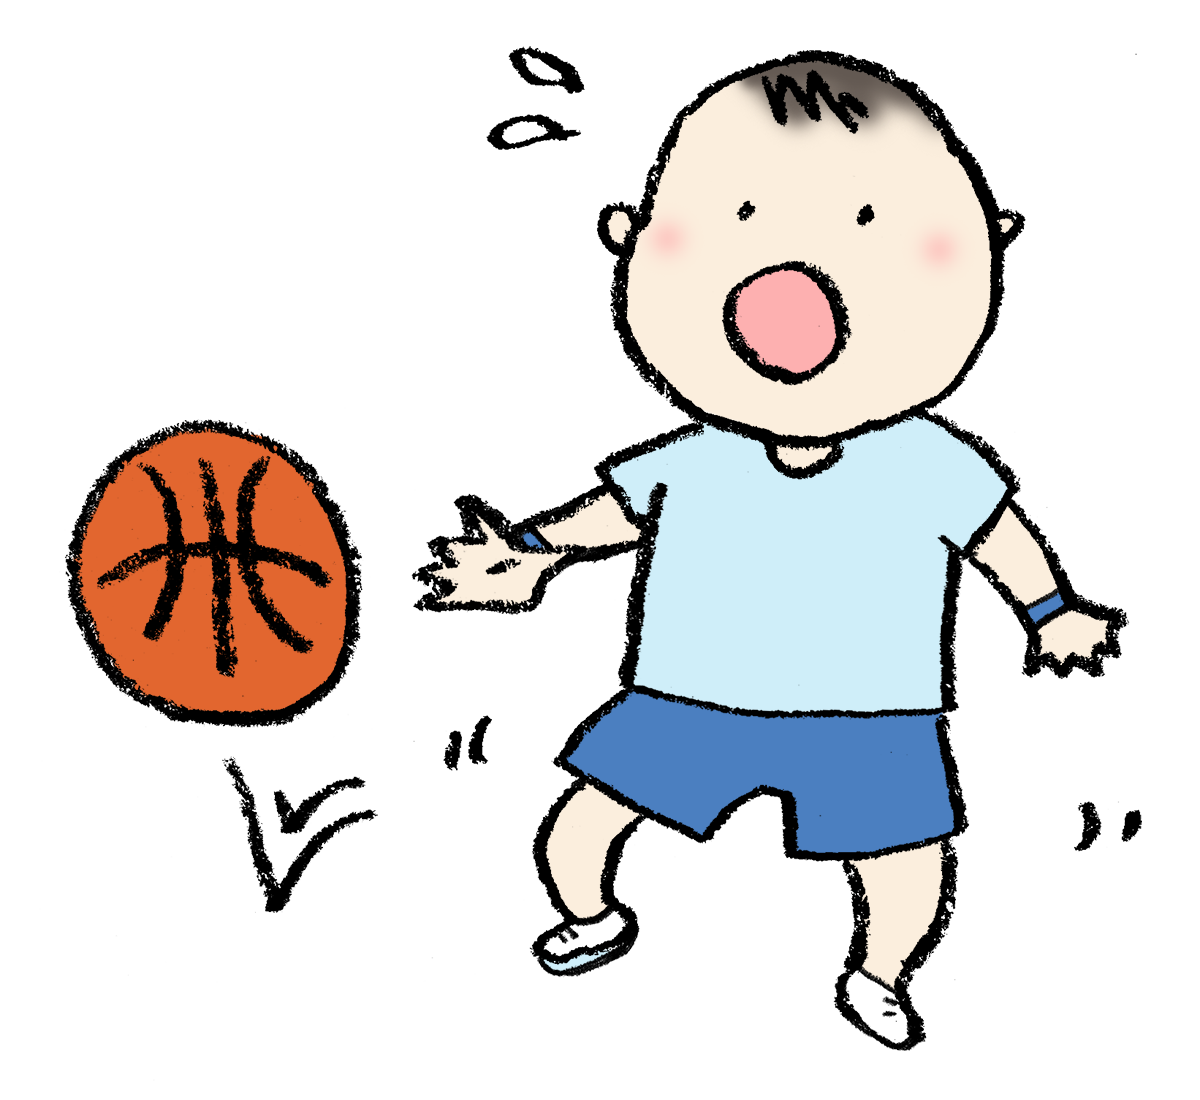 バスケットボールでドリブルが出来ない男の子 手書きイラスト えんぴつと画用紙